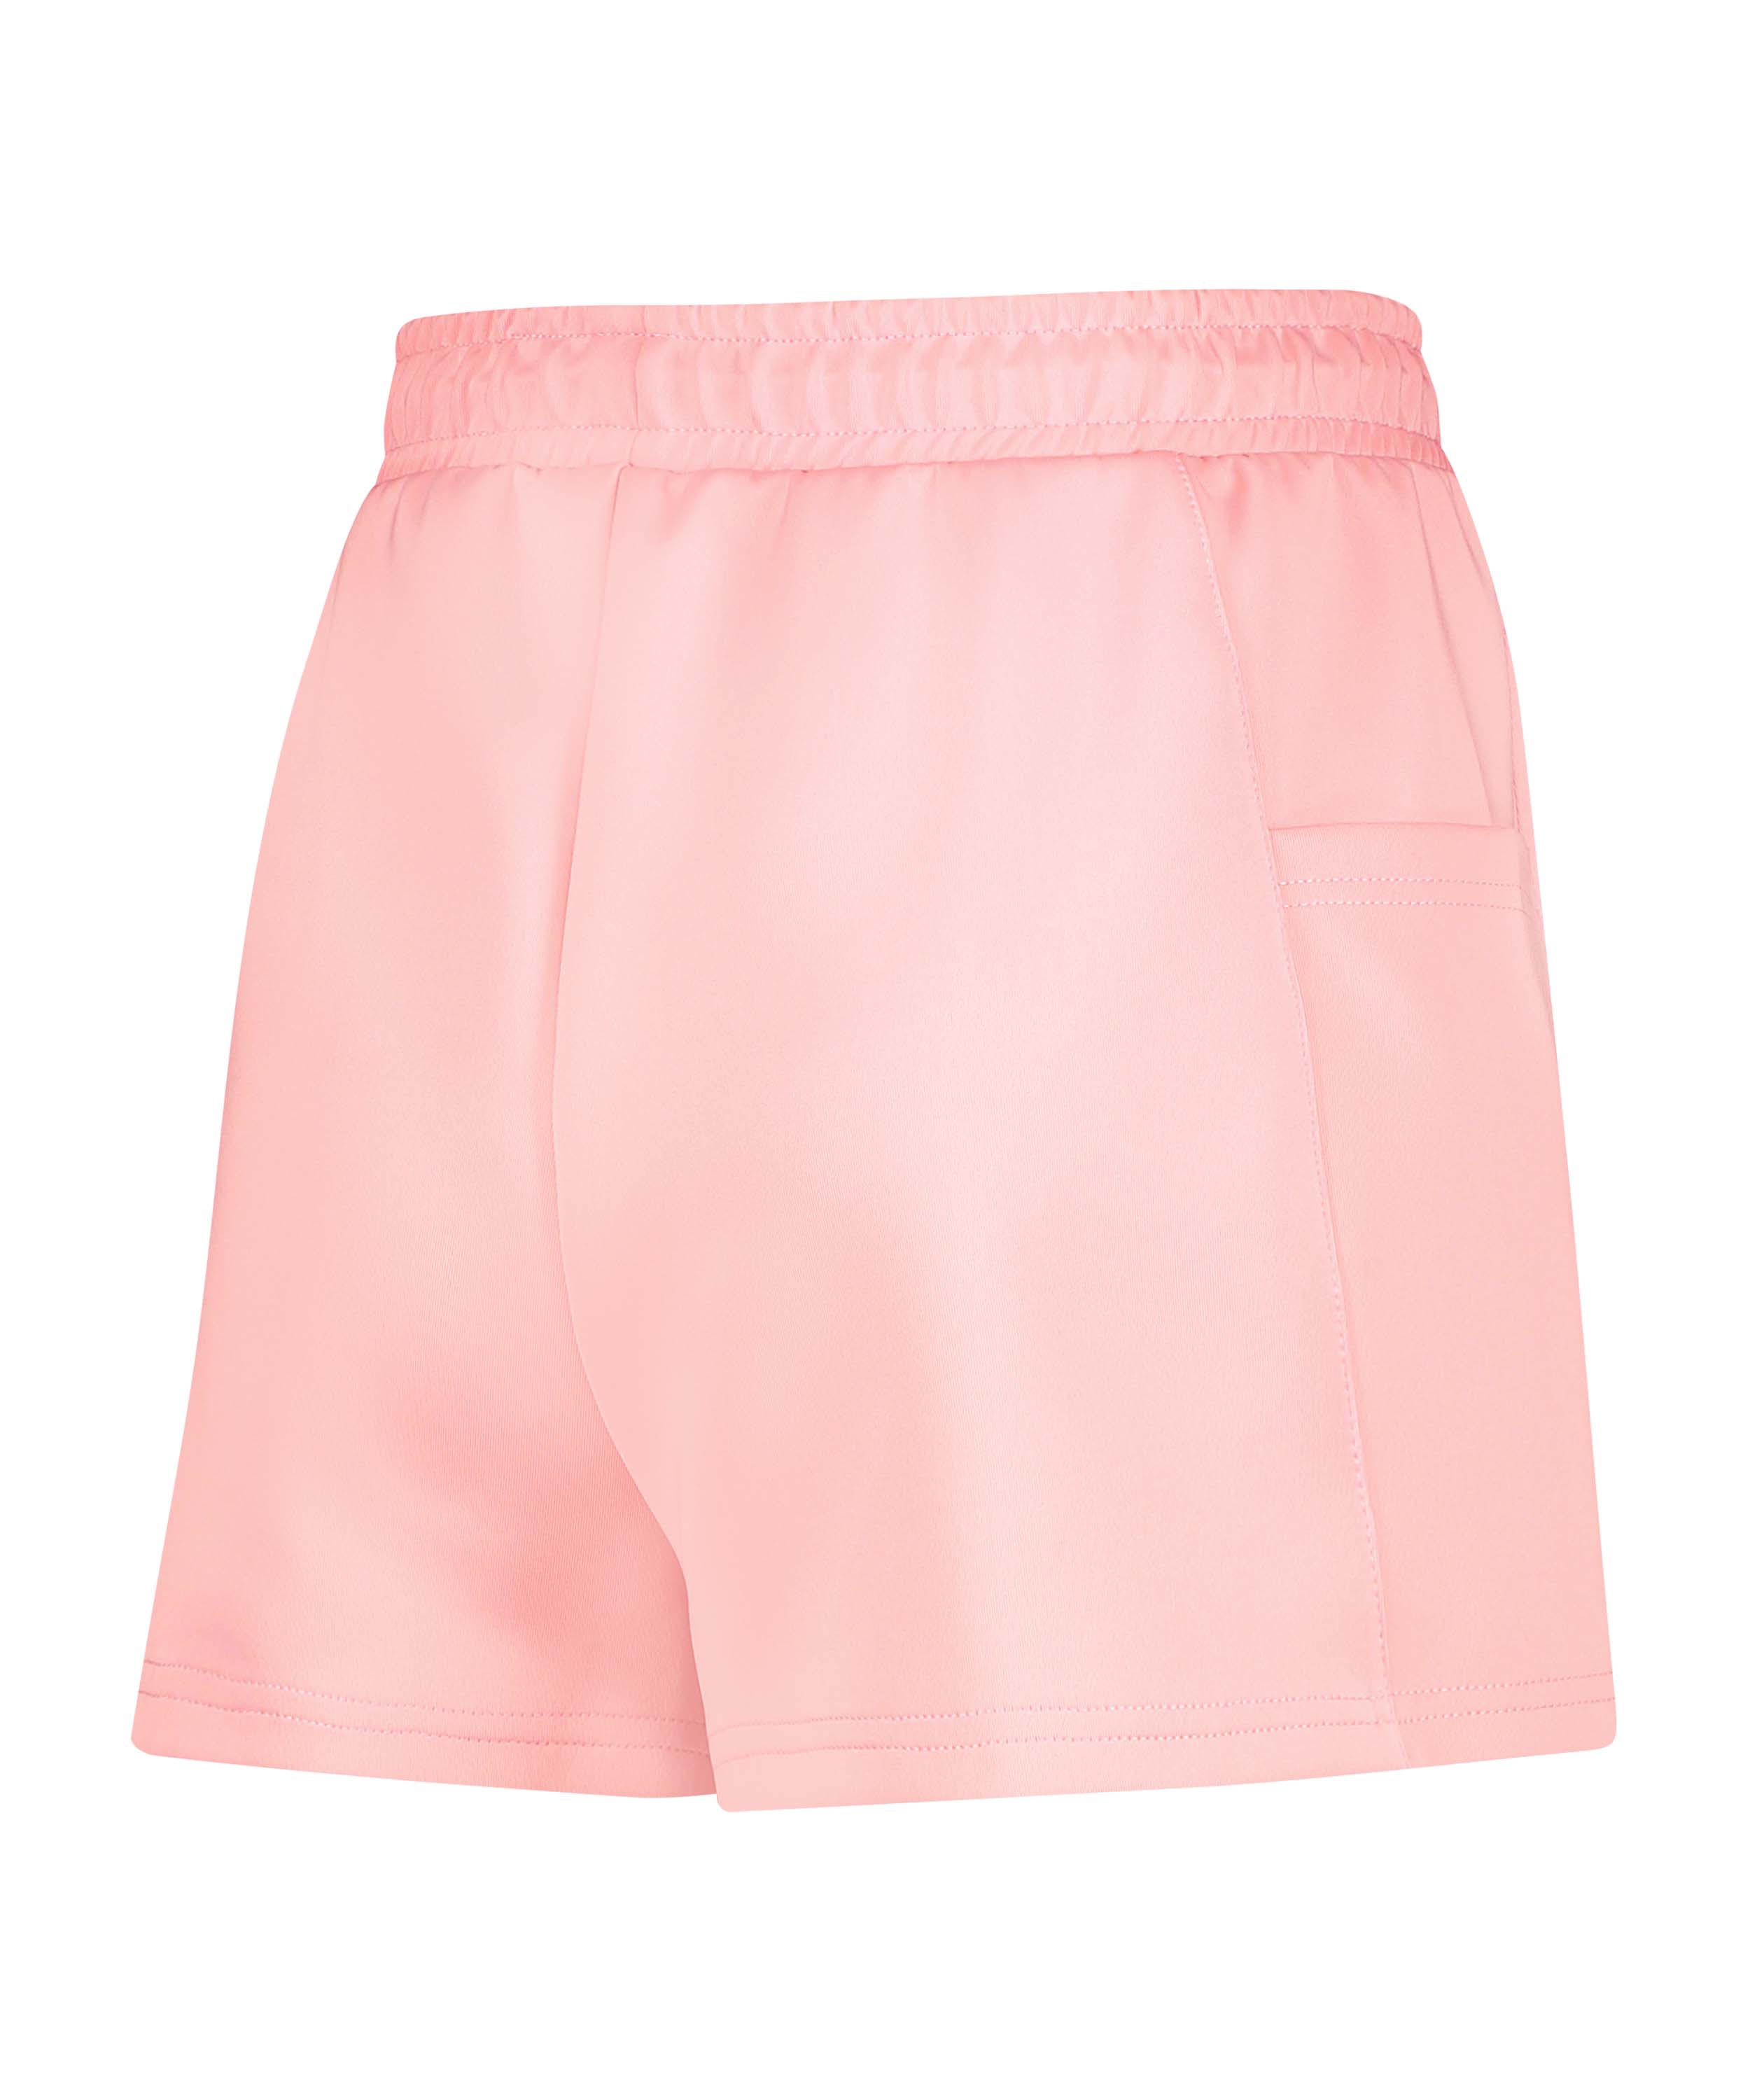 HKMX High waist shorts Ruby, Pink, main